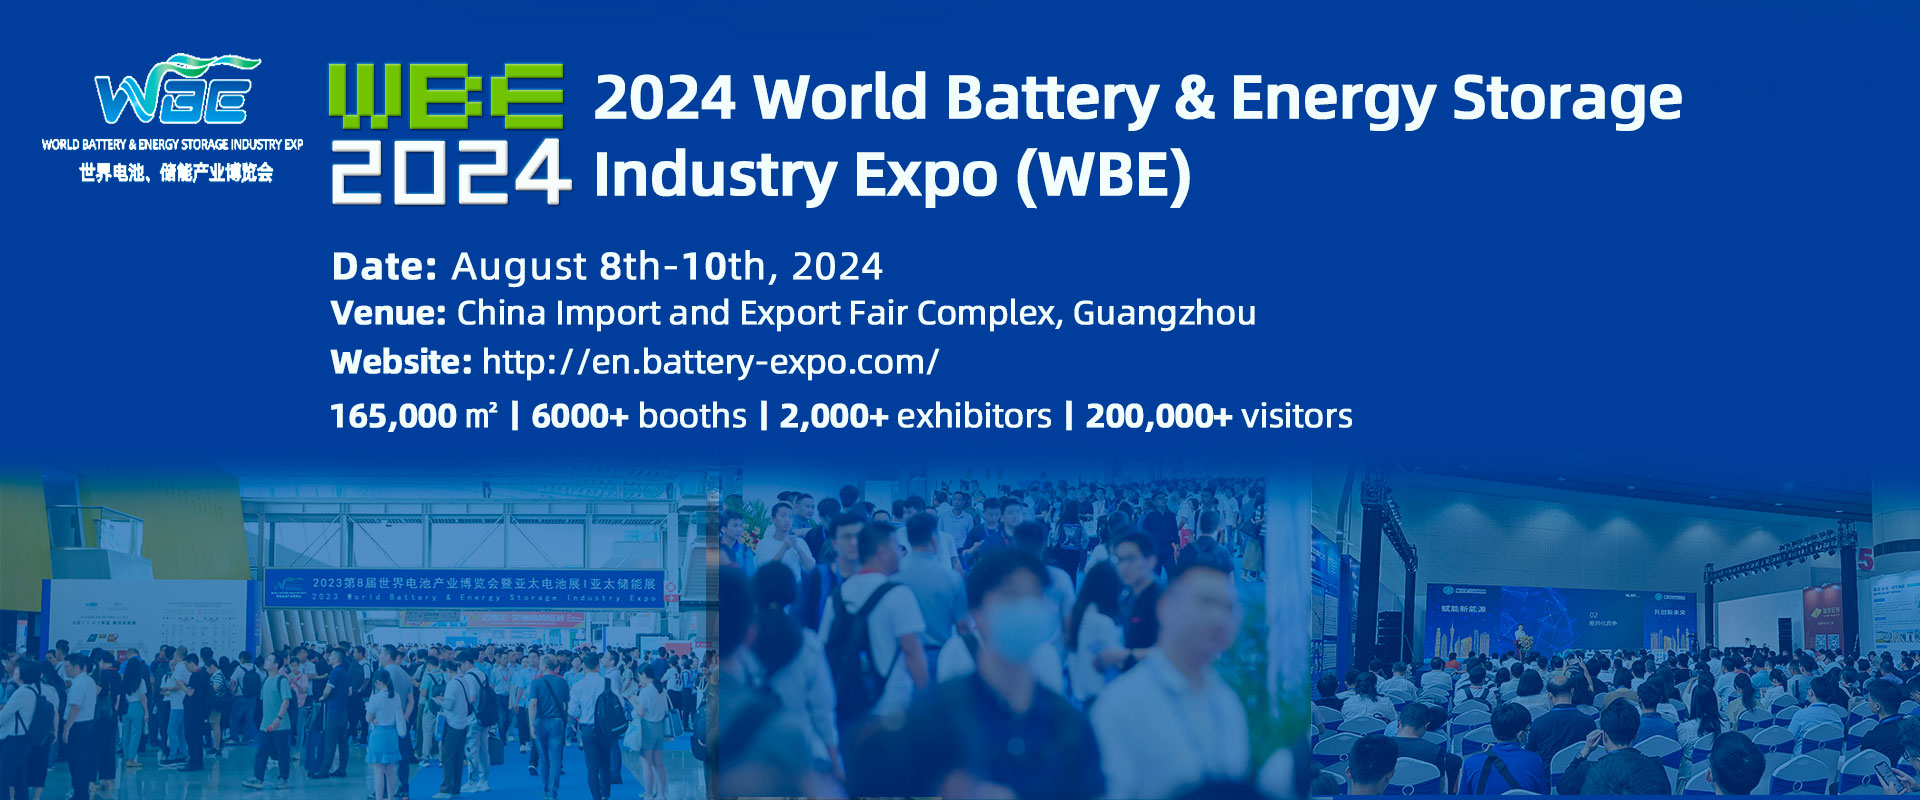 Выставка World Battery & Energy Storage Industry Expo (WBE) 2024 Китай